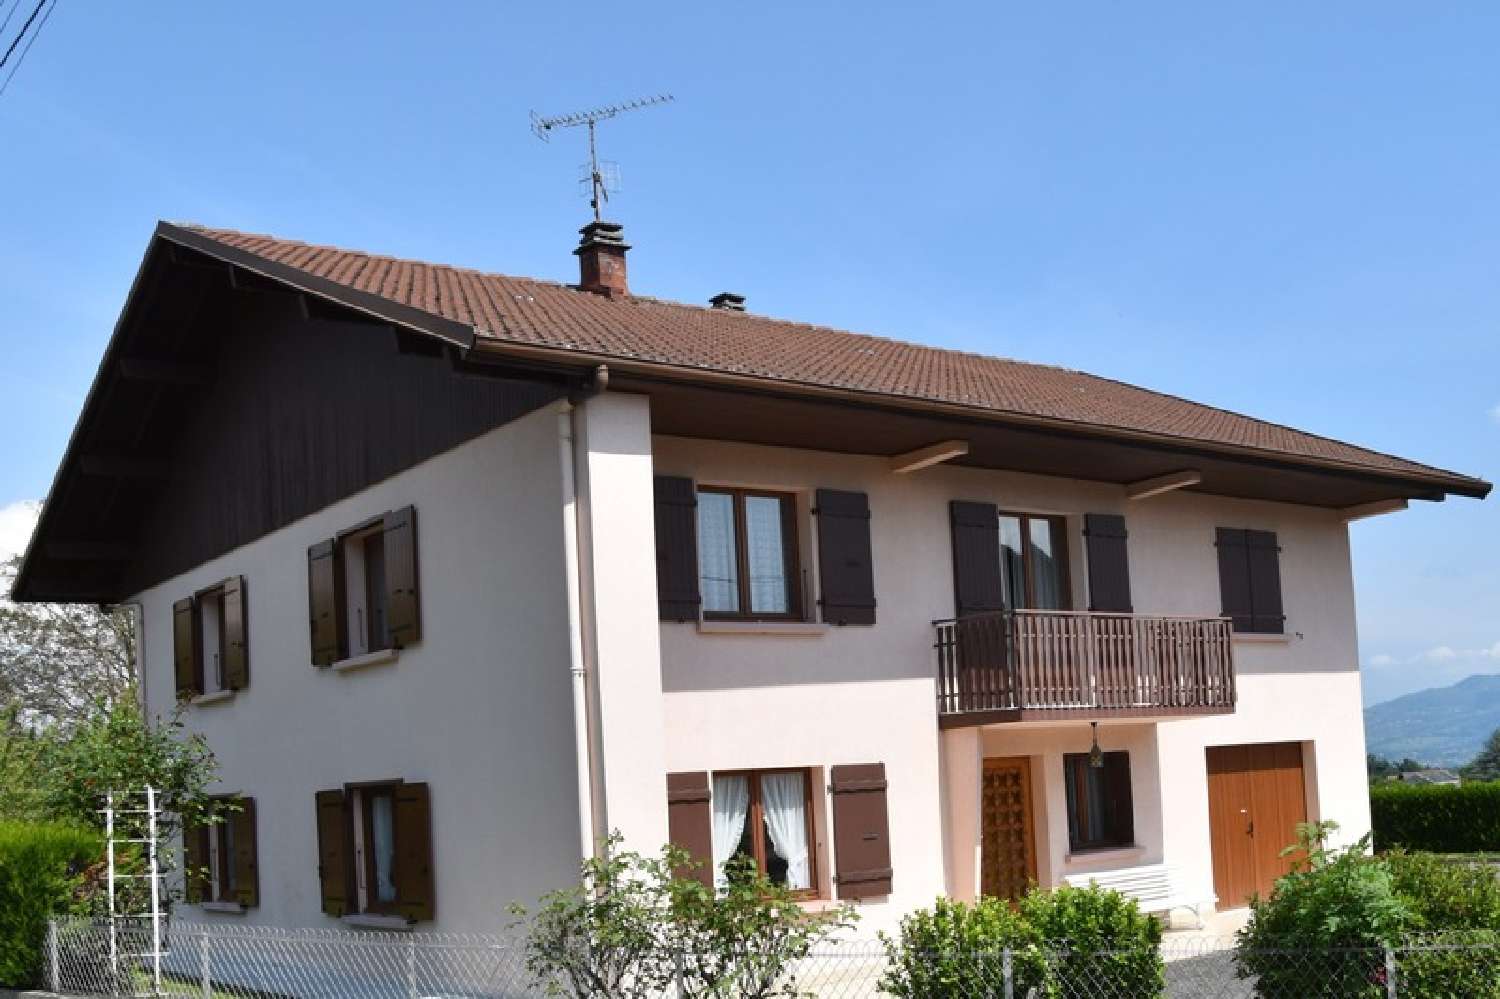  à vendre maison Cornier Haute-Savoie 2